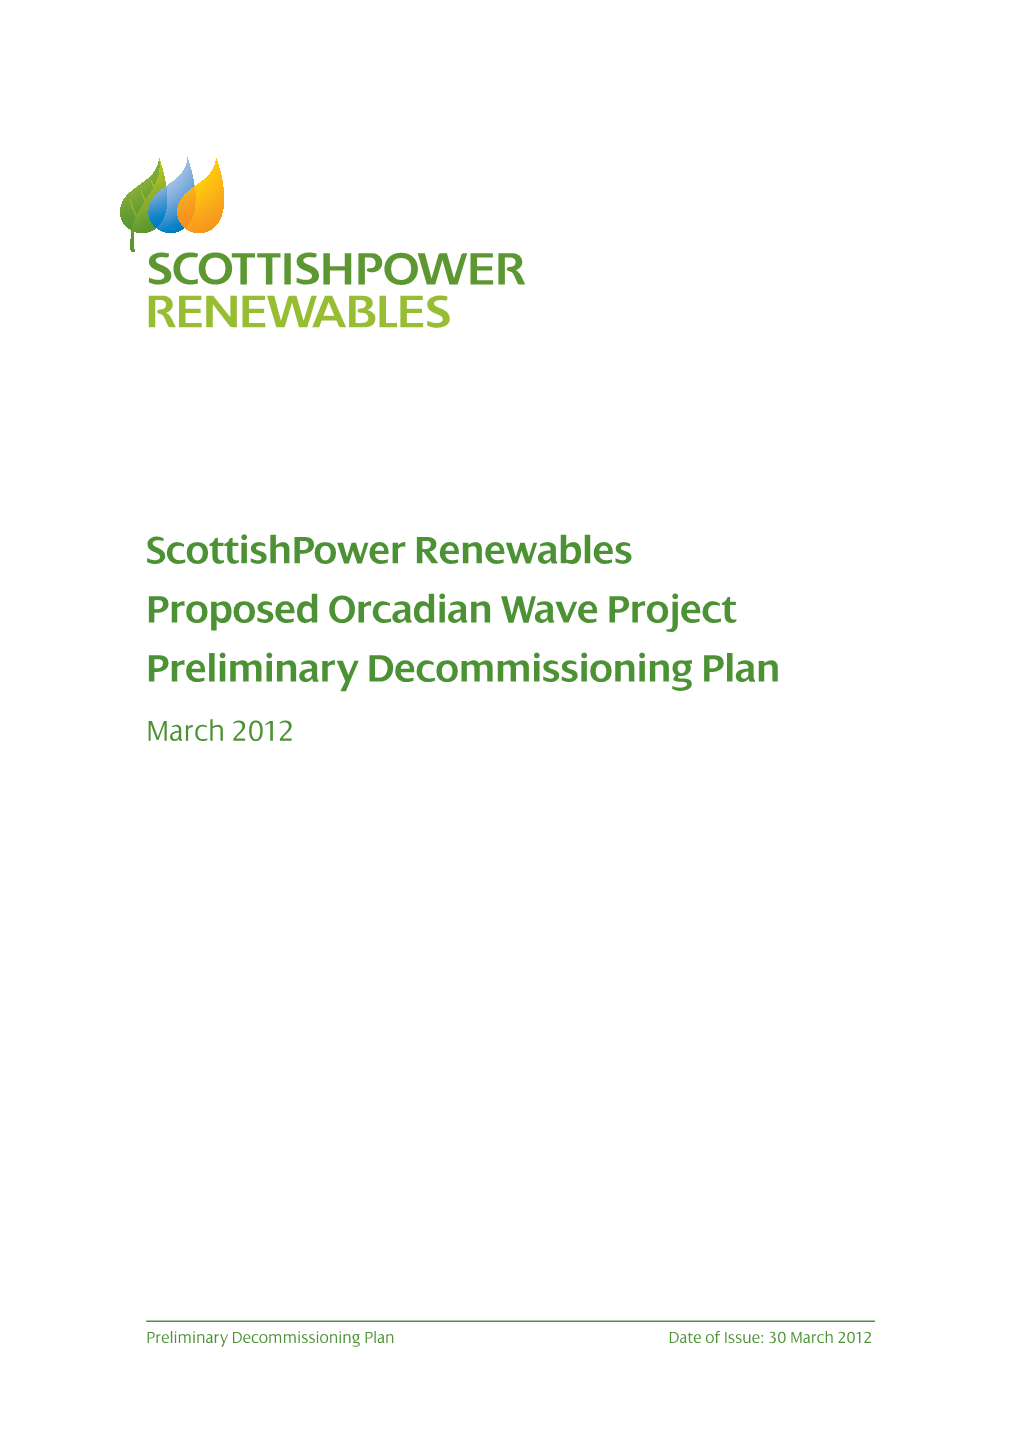 Scottishpower Renewables Pelamis Decommissioning Plan